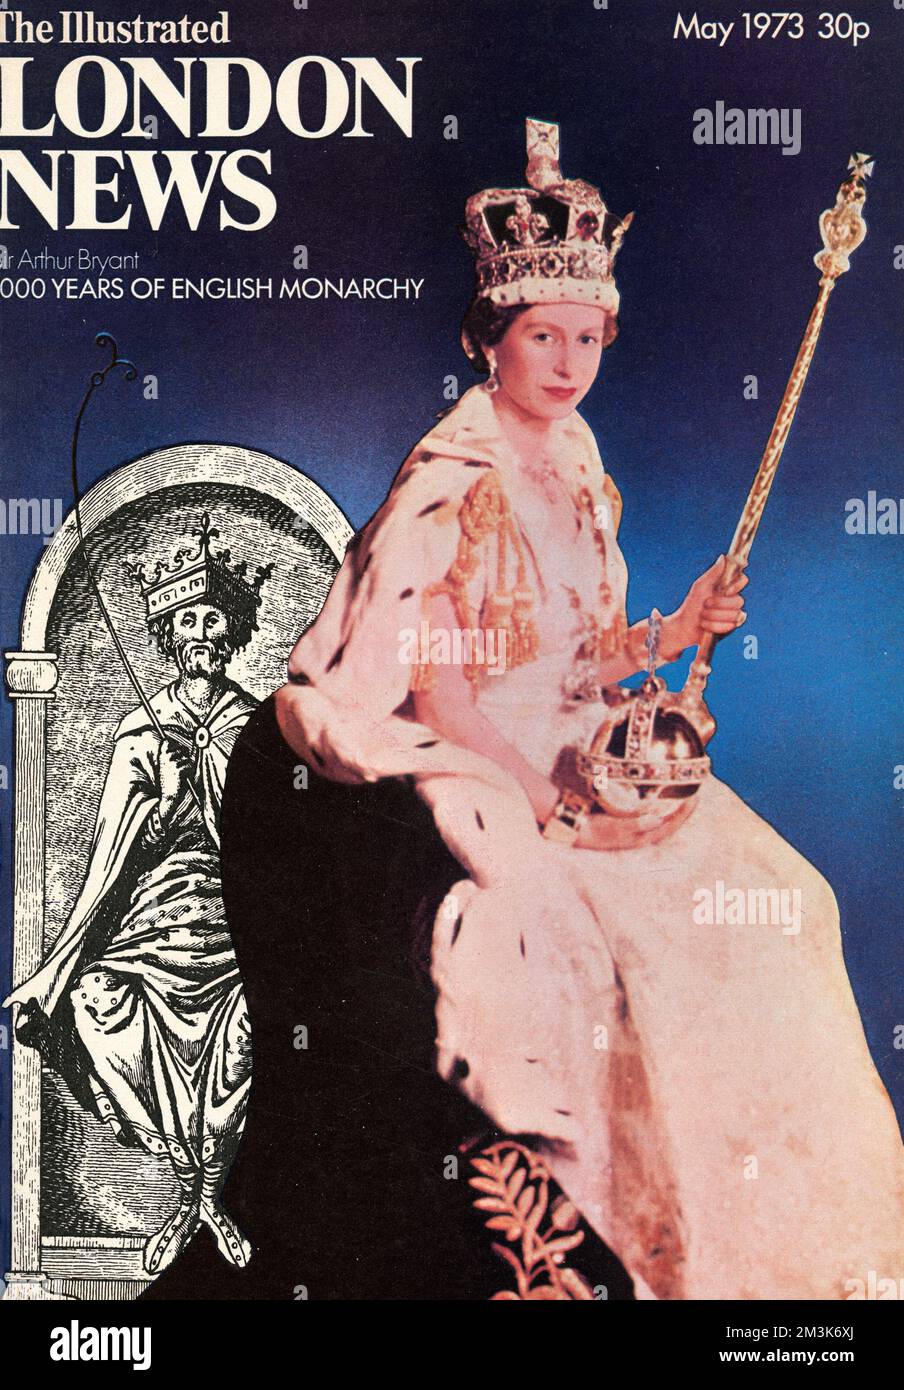 La copertina anteriore dell'ILN con un ritratto della Regina Elisabetta II, per celebrare i 1000 anni della monarchia inglese Data: 1973 Foto Stock